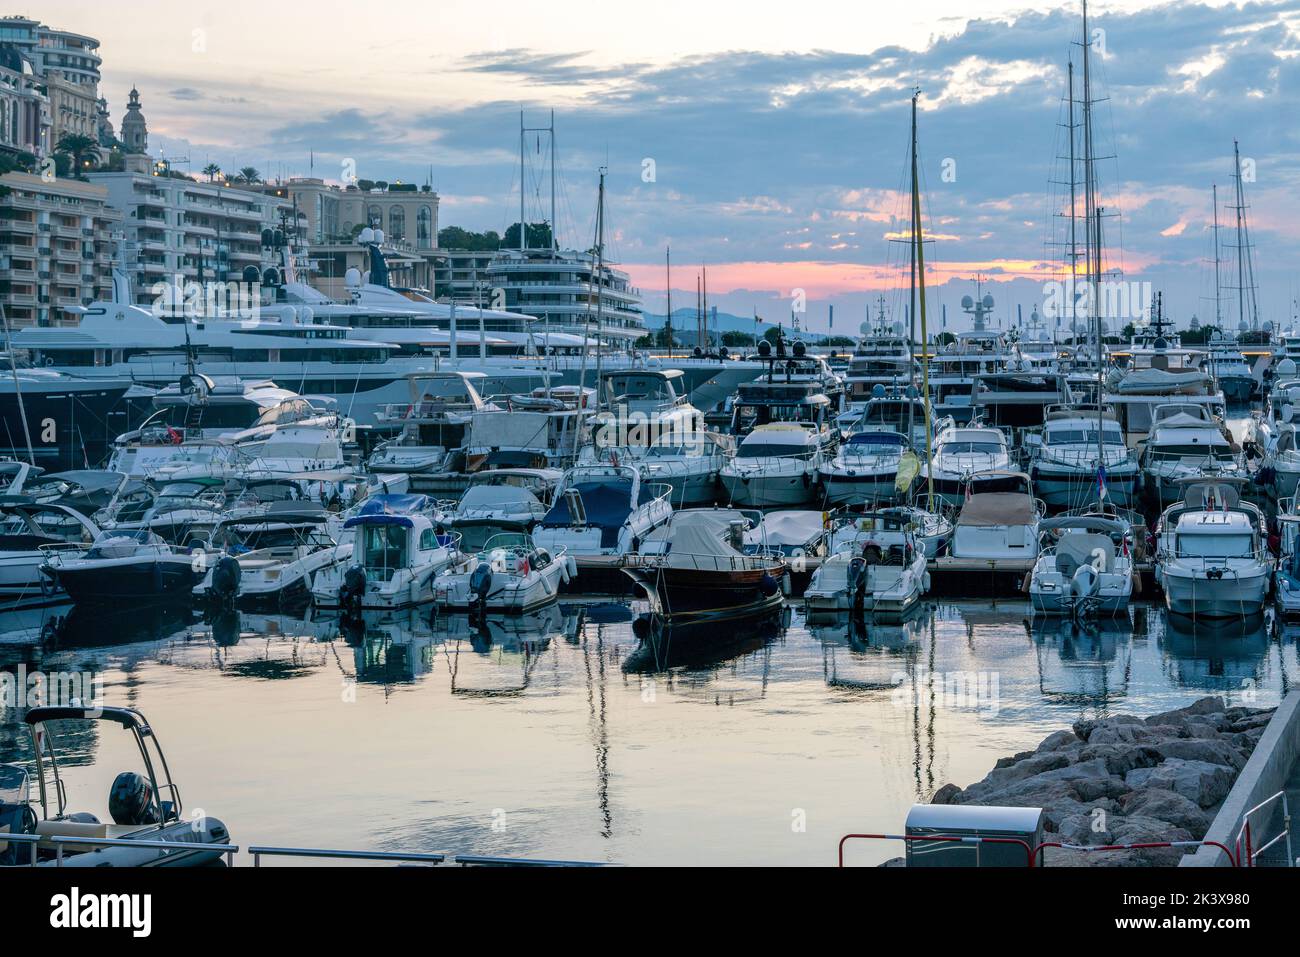 Hors-bord et yachts dans le port de Monaco en début de matinée. Bâtiments dans le coin gauche - peut-être casino! Banque D'Images